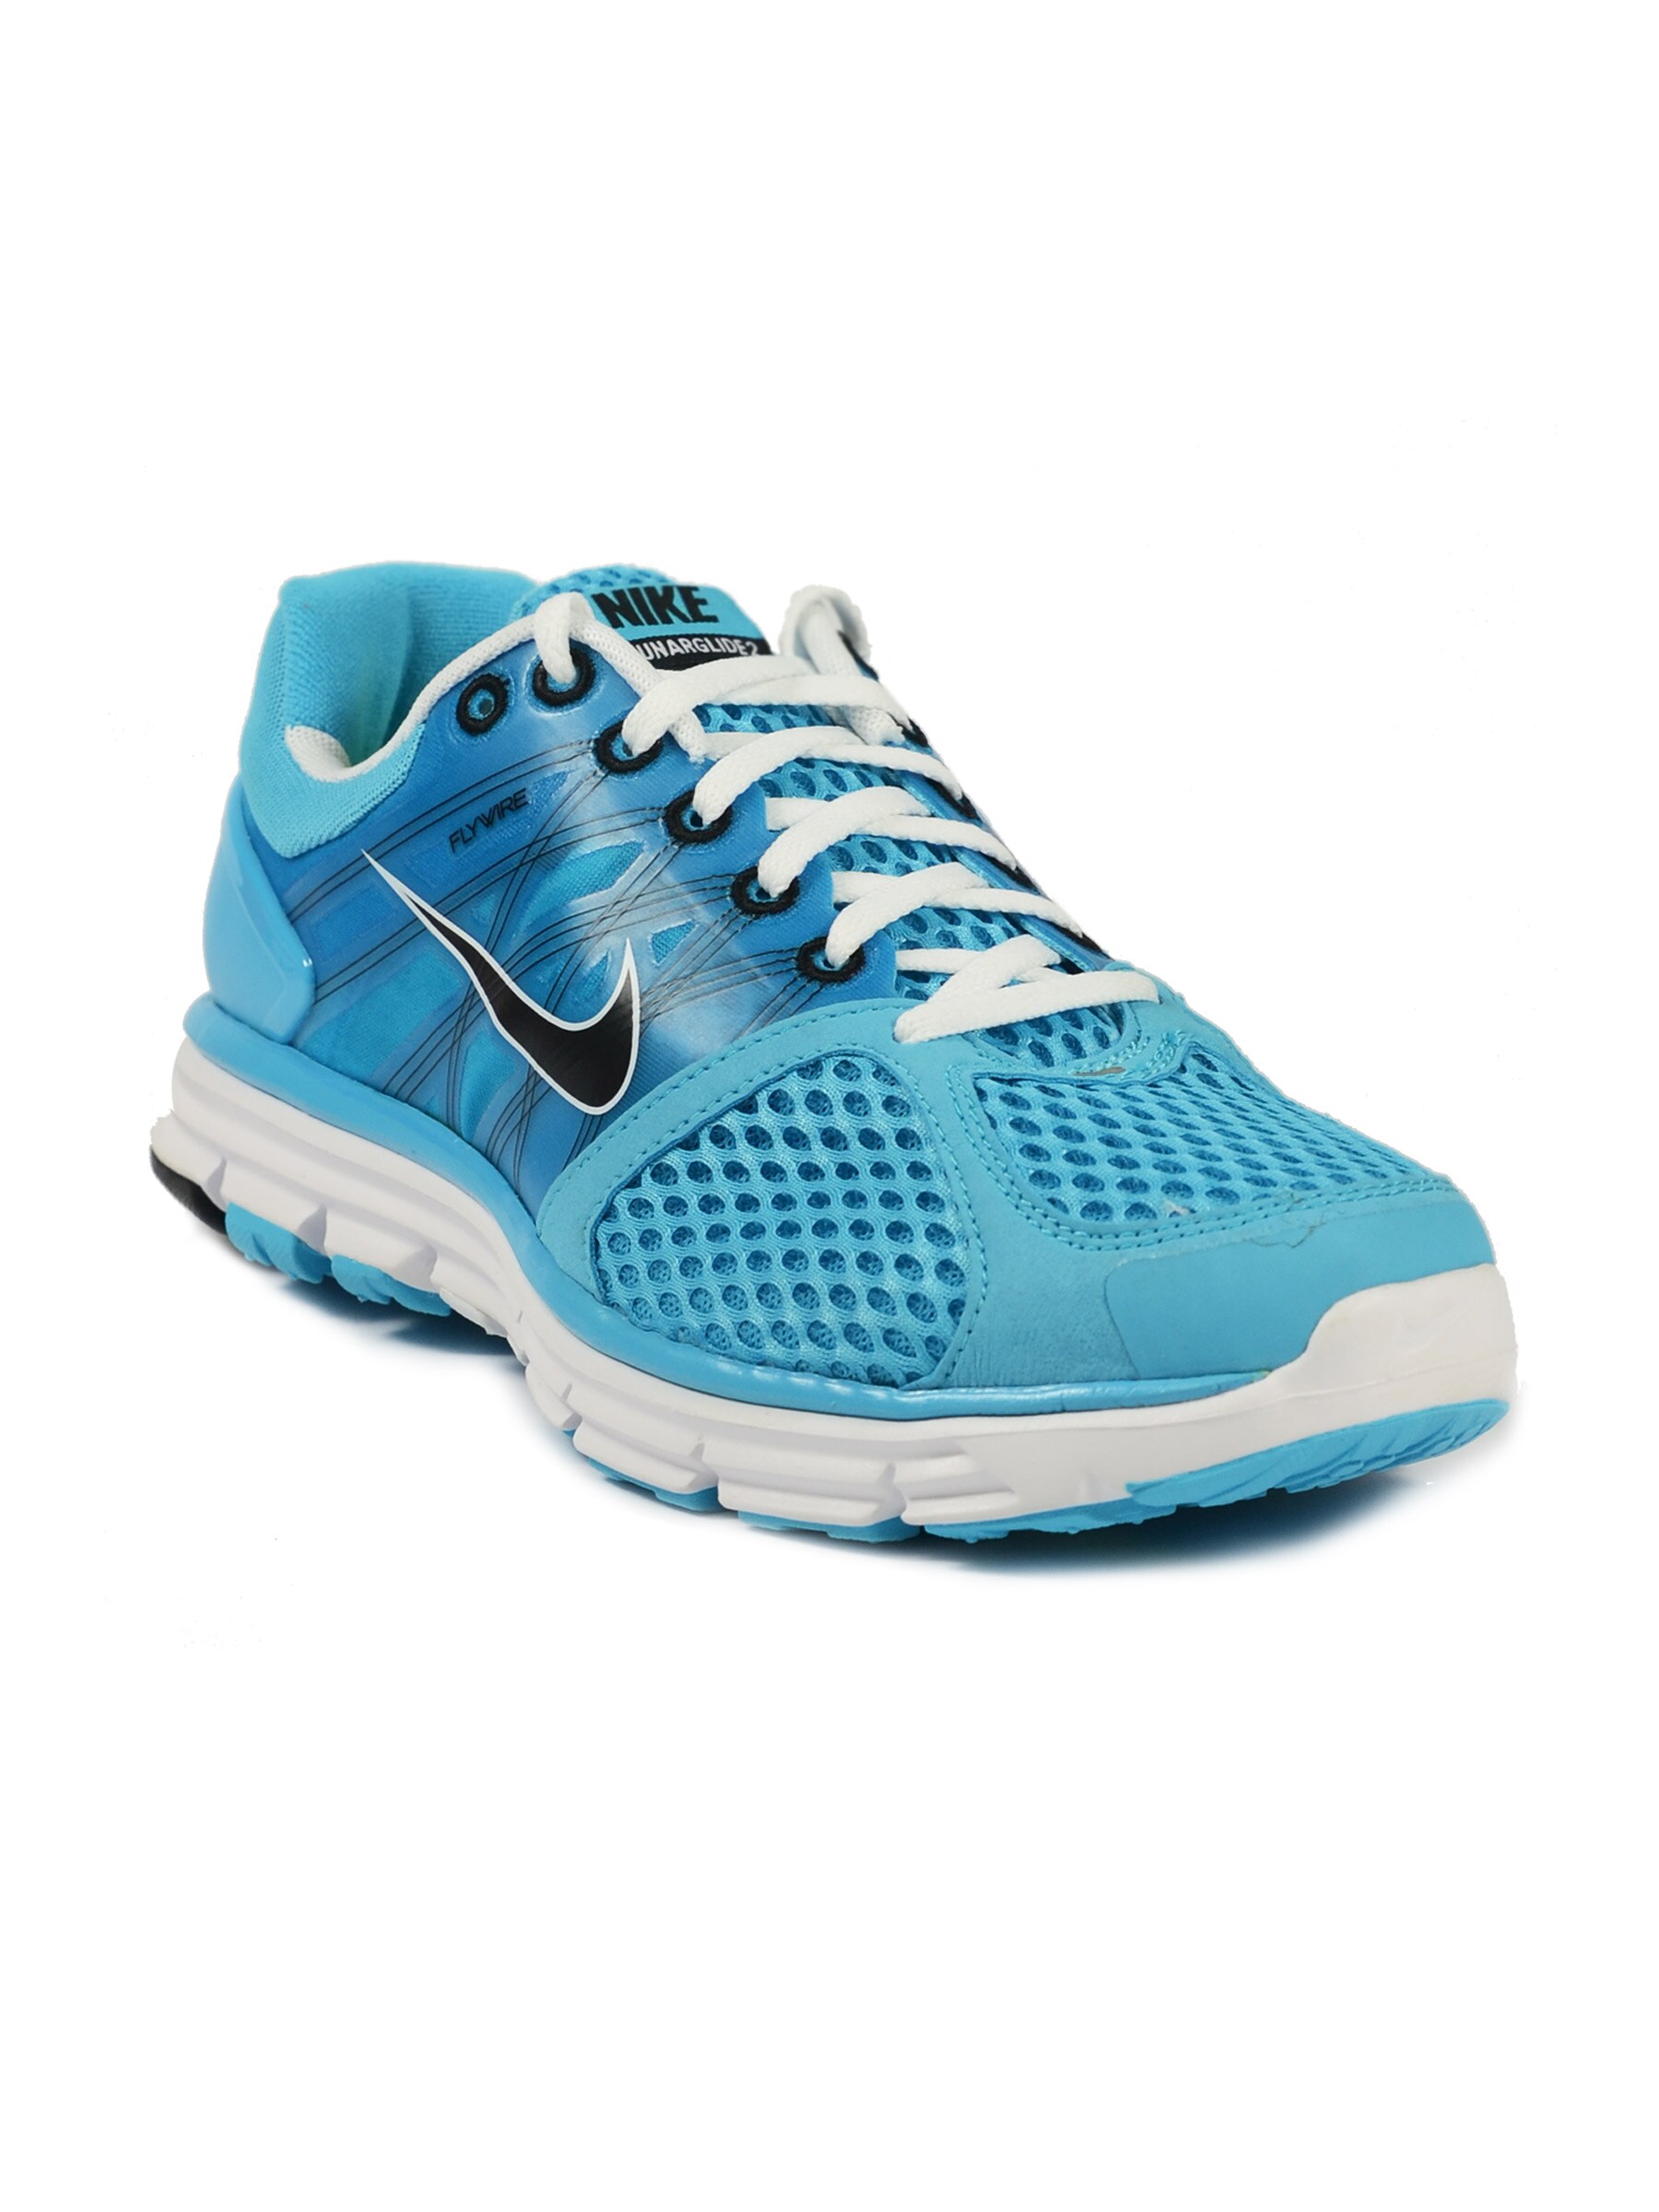 Nike Men's Lunargli Chlor Blue Black Unargli Shoe